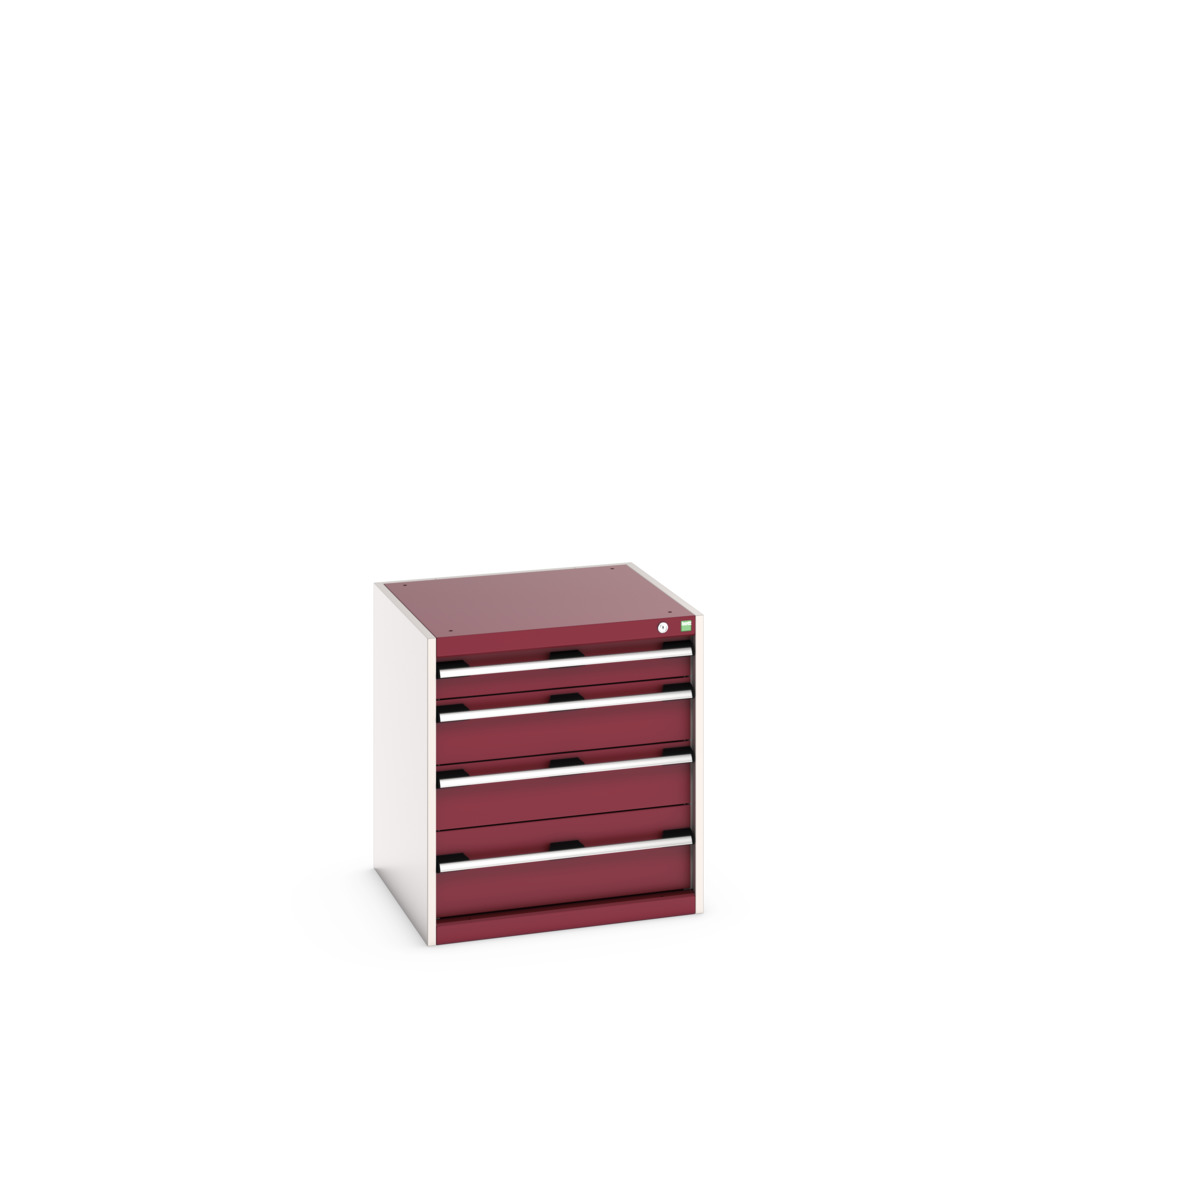 40019025.24V - cubio drawer cabinet